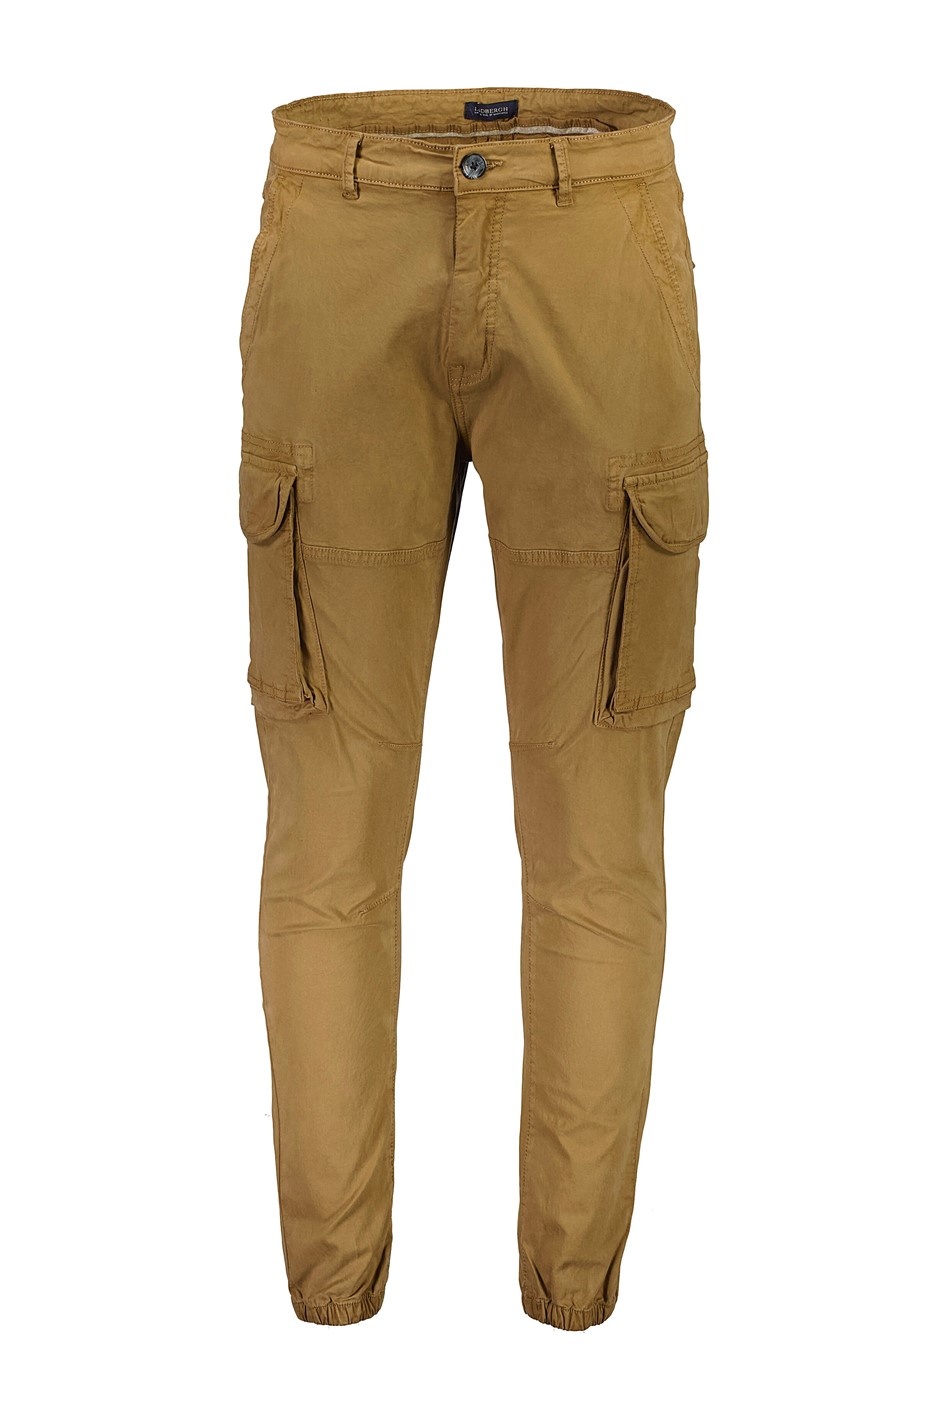 Men Corduroy Flap Pocket Side Cargo Trousers | Brown Cargo Pants Outfit | Cargo  pants outfit, Brown cargo pants outfit, Pants outfit men